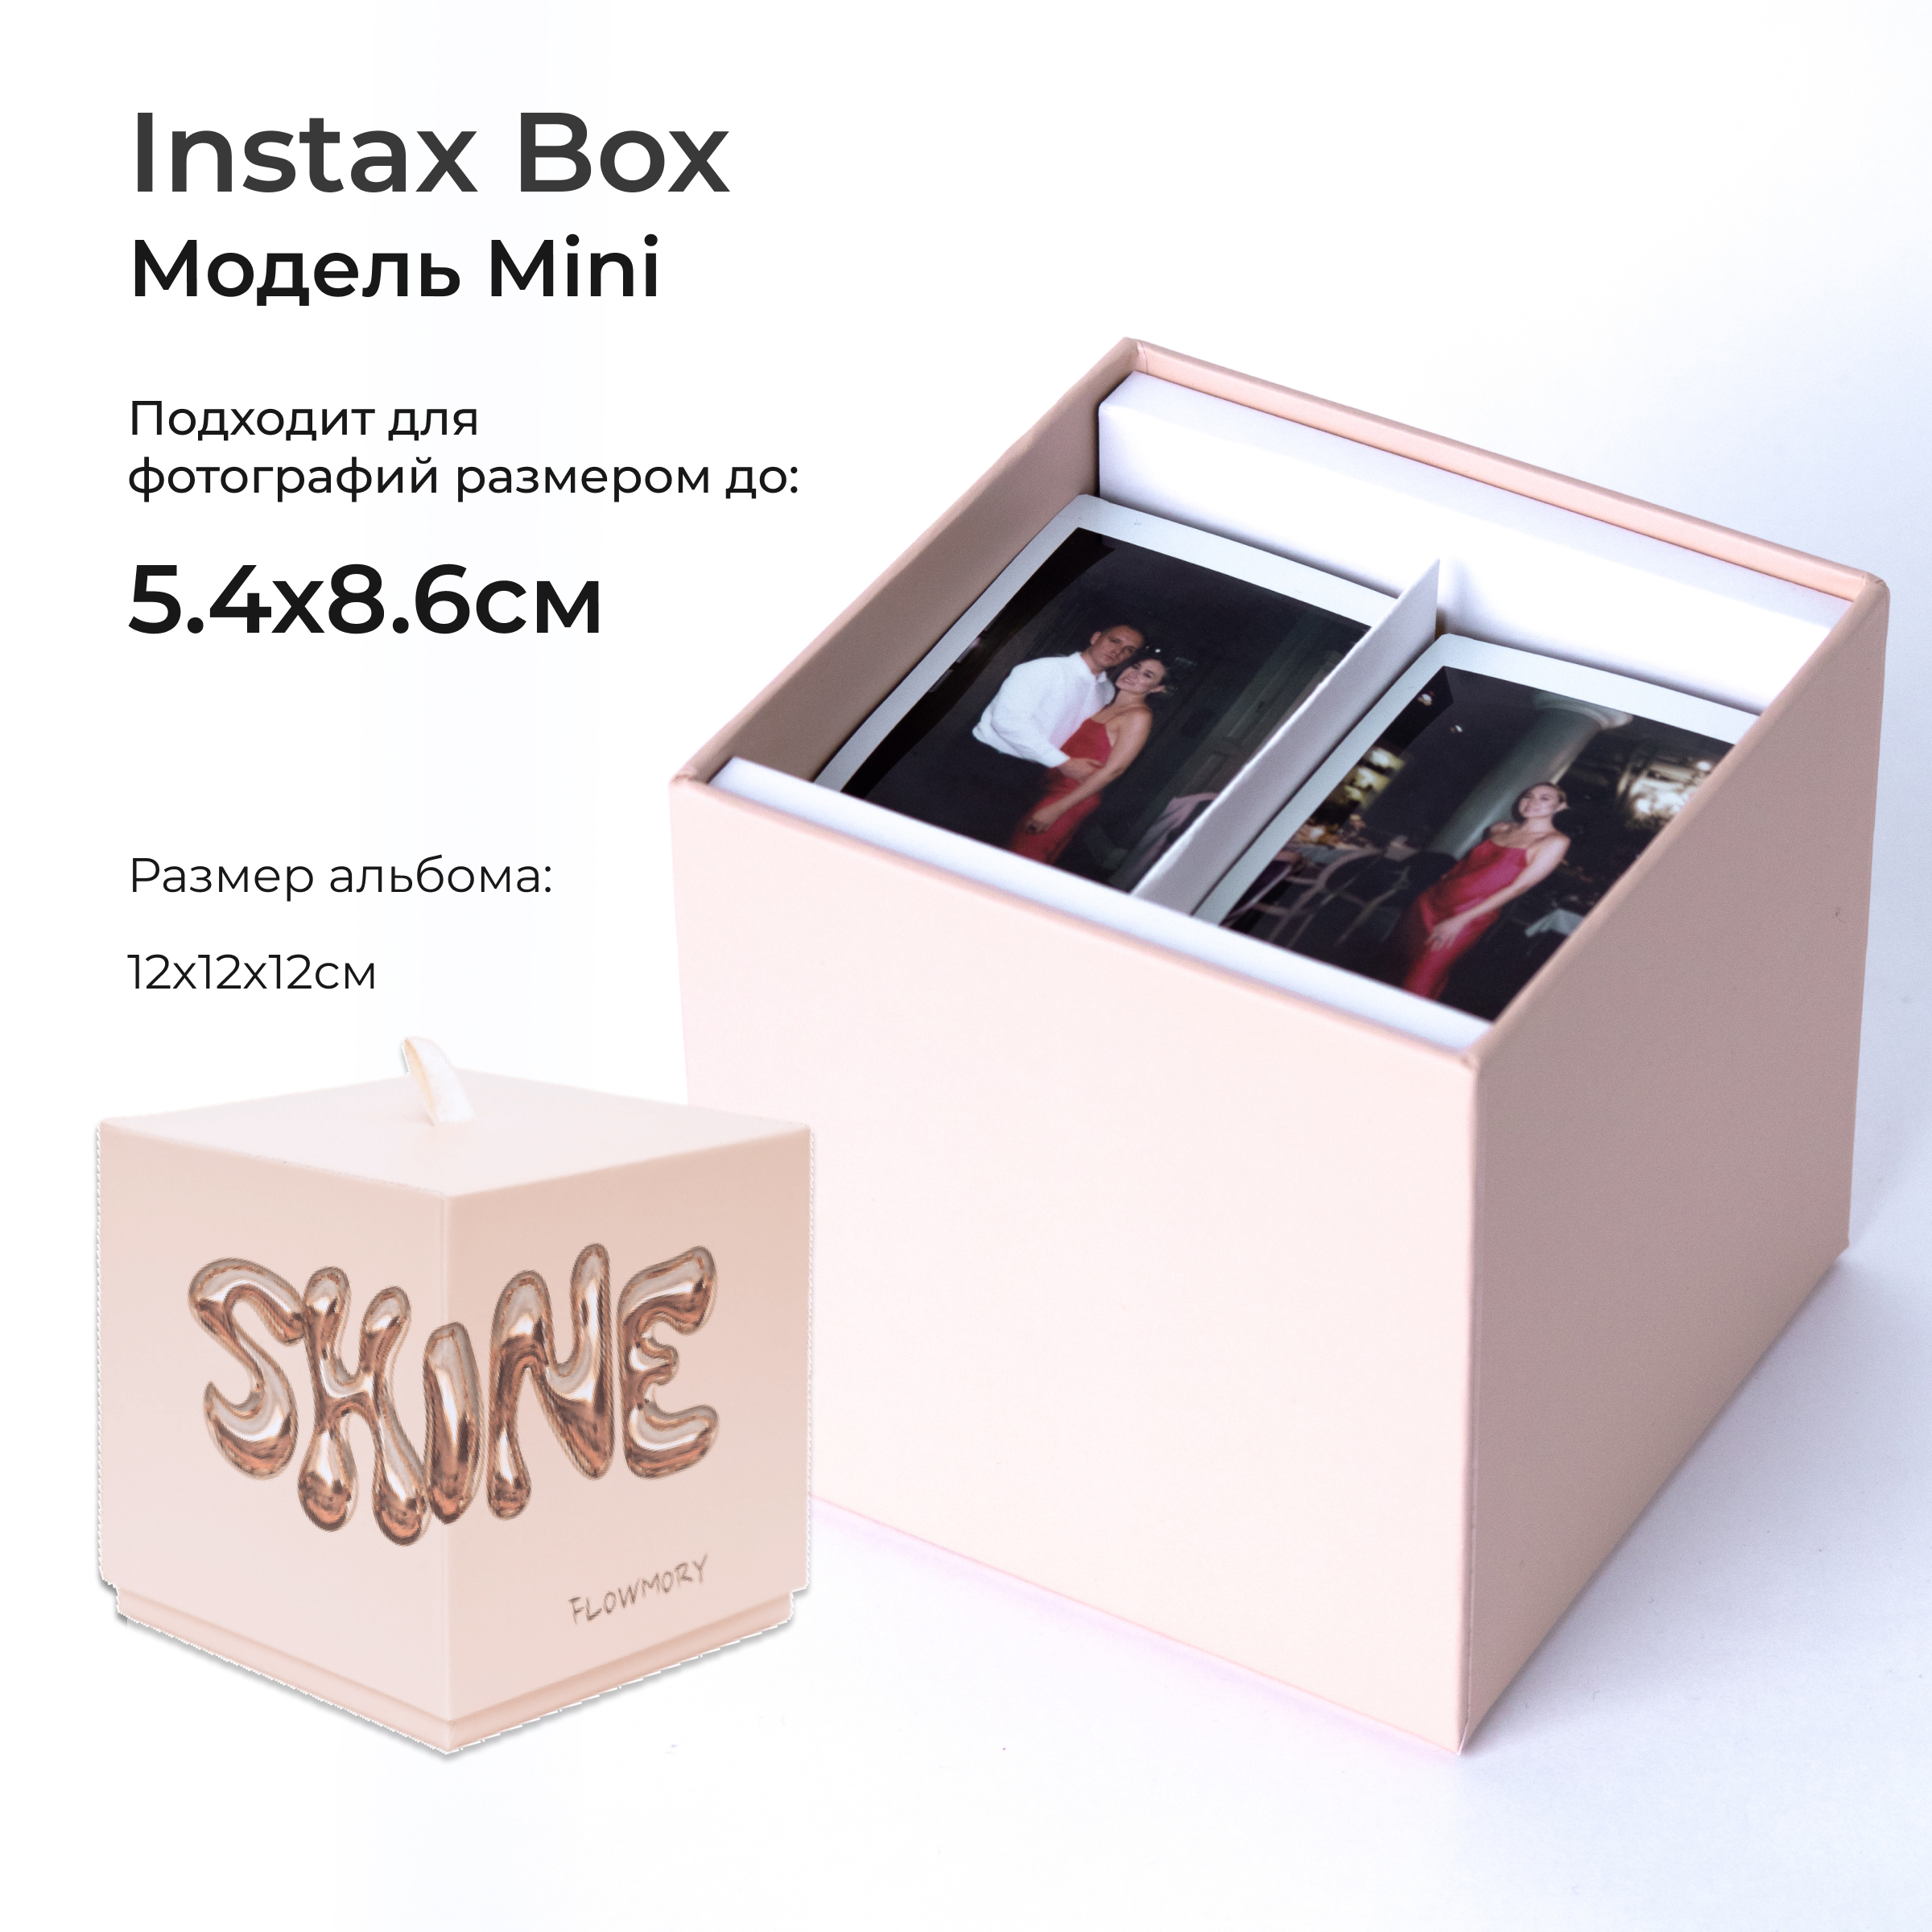 Фотоальбом FLOWMORY mini SHINE коробочка для instax и polaroid фотографий